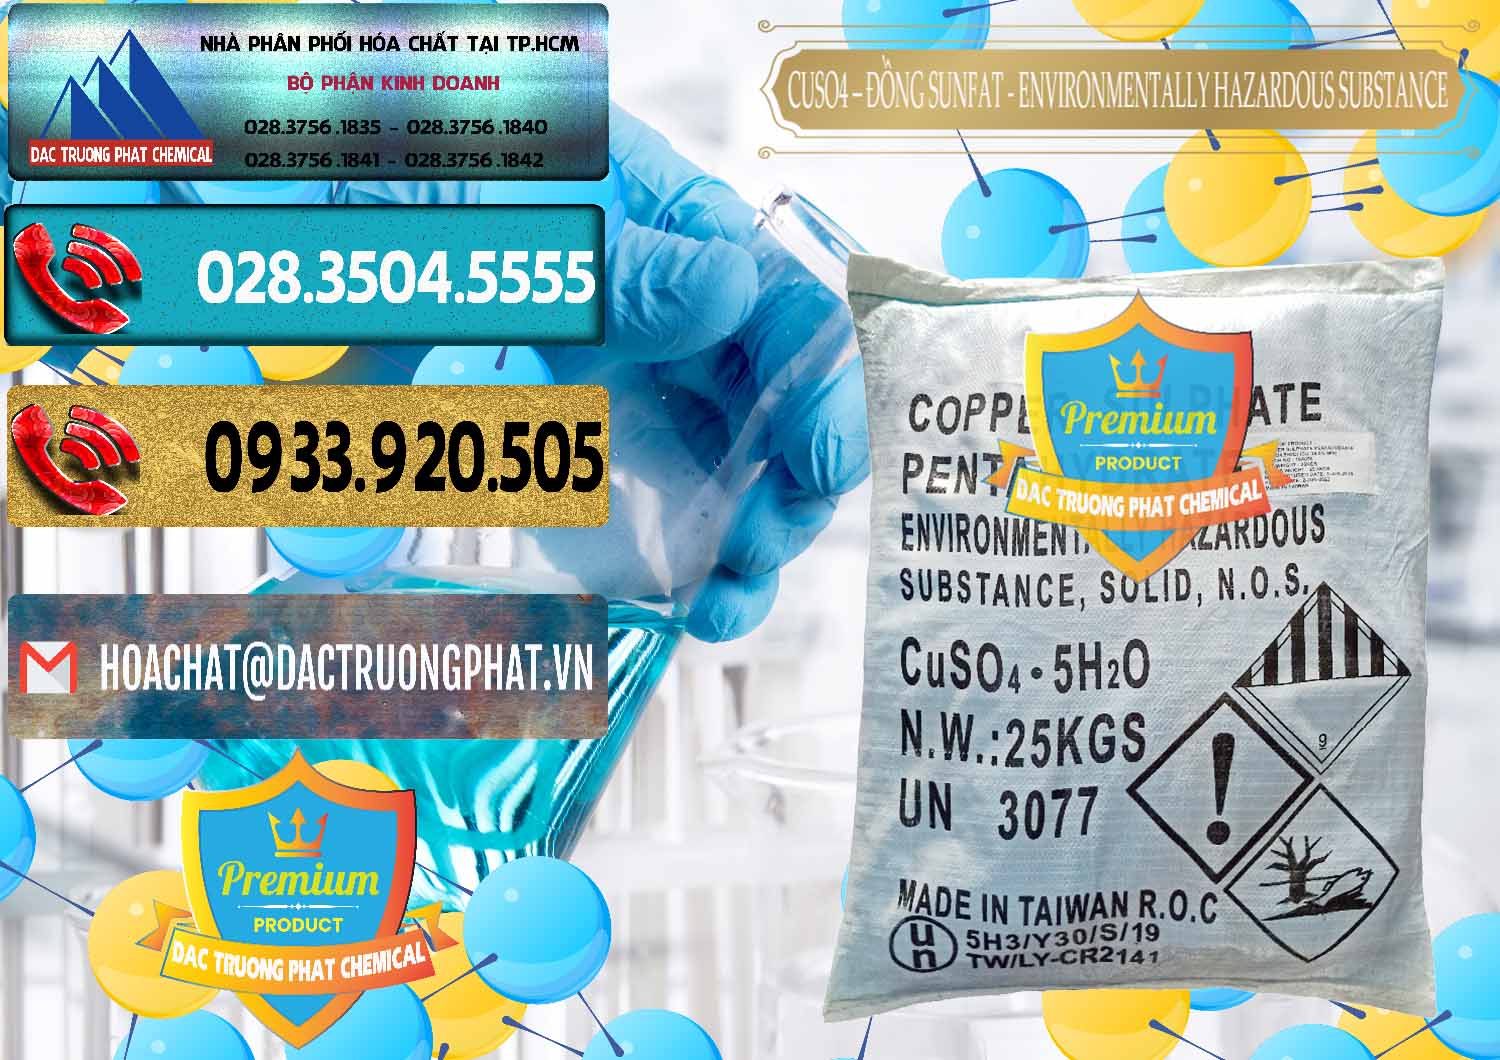 Cty chuyên phân phối & bán CuSO4 – Đồng Sunfat Đài Loan Taiwan - 0059 - Đơn vị chuyên phân phối ( bán ) hóa chất tại TP.HCM - hoachatdetnhuom.com